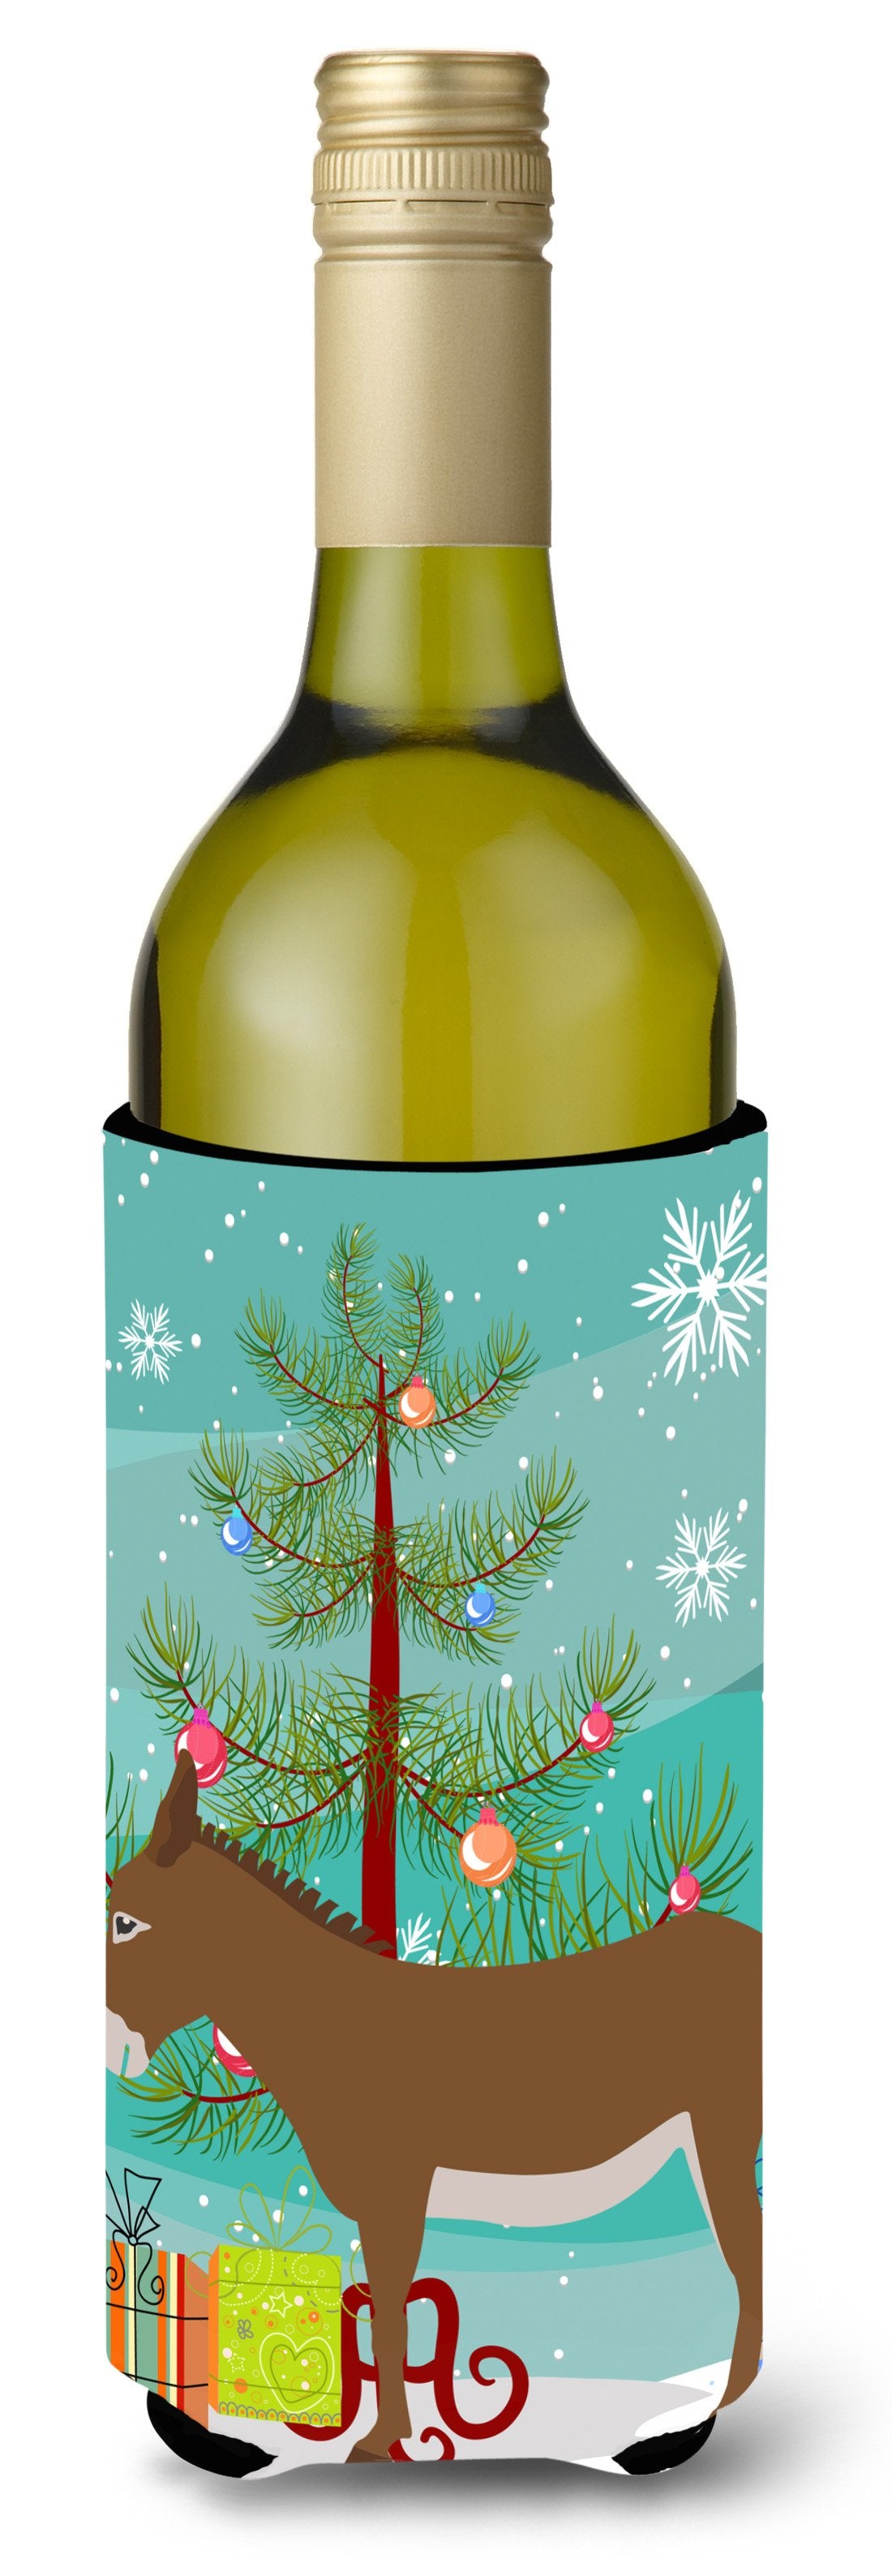 Cotentin Donkey Christmas Wine Bottle Beverge Insulator Hugger BB9216LITERK by Caroline's Treasures